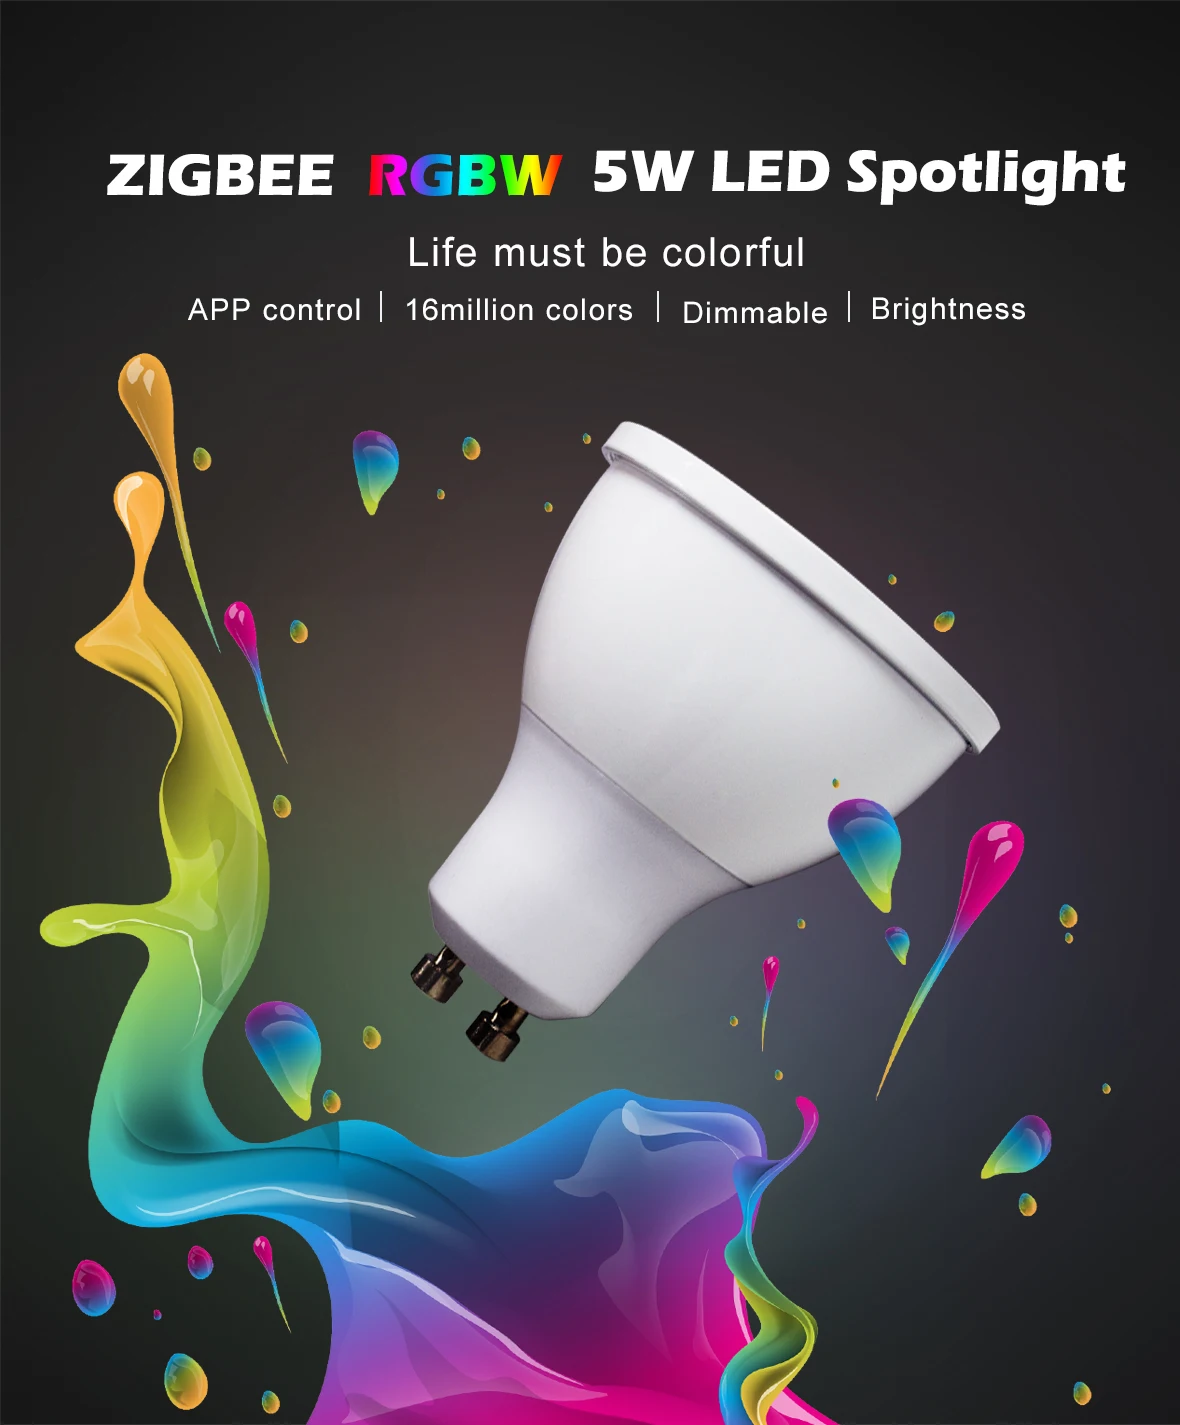 12 шт./компл. ZIGBEE ZLL RGB+ CCT RGBW WWCW светодиодный прожектор, E27/E26/GU10, 5 Вт, двойная белая и Цвет колпак для лампы, с поддержкой диммера, для Amazon Echo plus